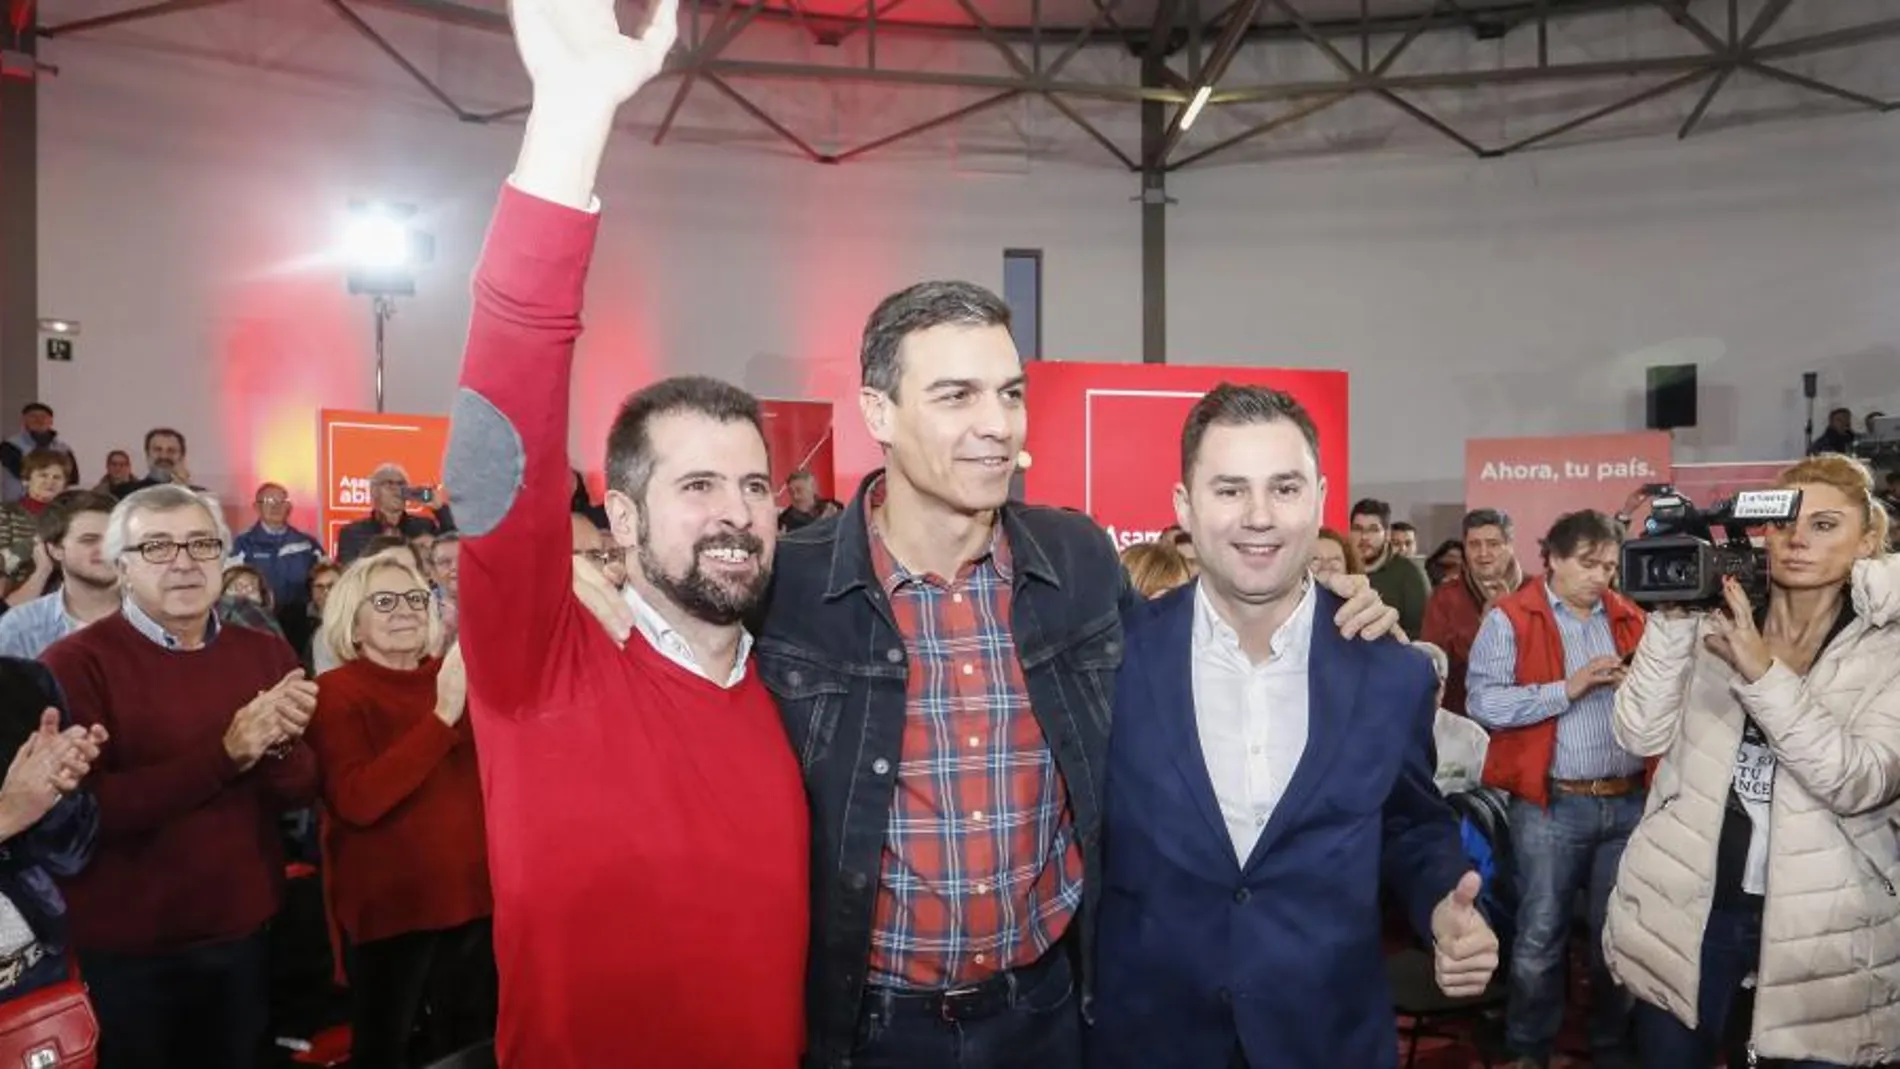 El secretario general del PSOE, Pedro Sánchez, interviene junto al autonómico, Luis Tudanca y el provincial, Javier Cendón, en la Asamblea Abierta de León